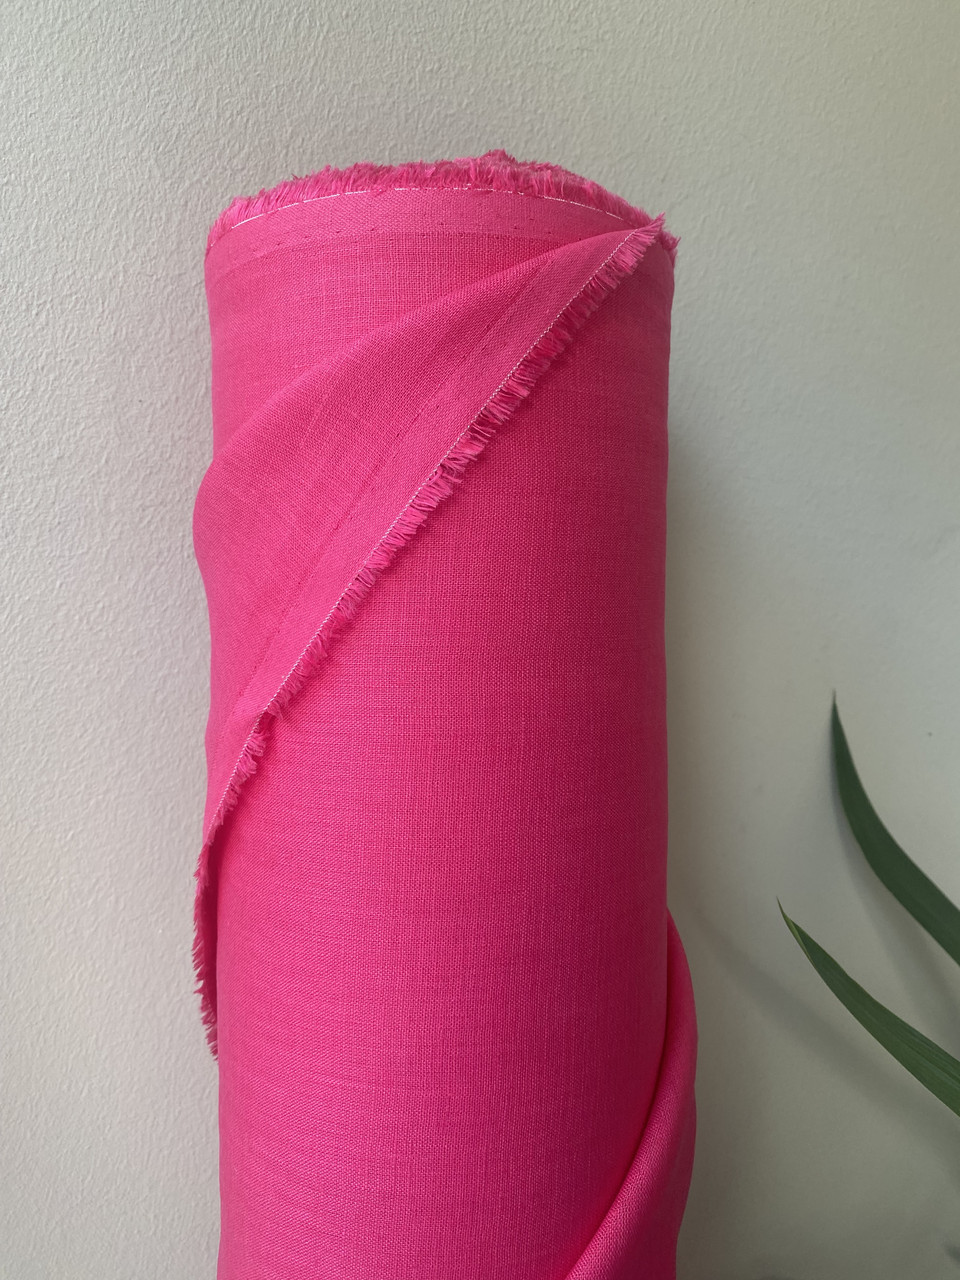 Сорочково-платтєва 100% лляна тканина кольору фуксія, колір 905/80